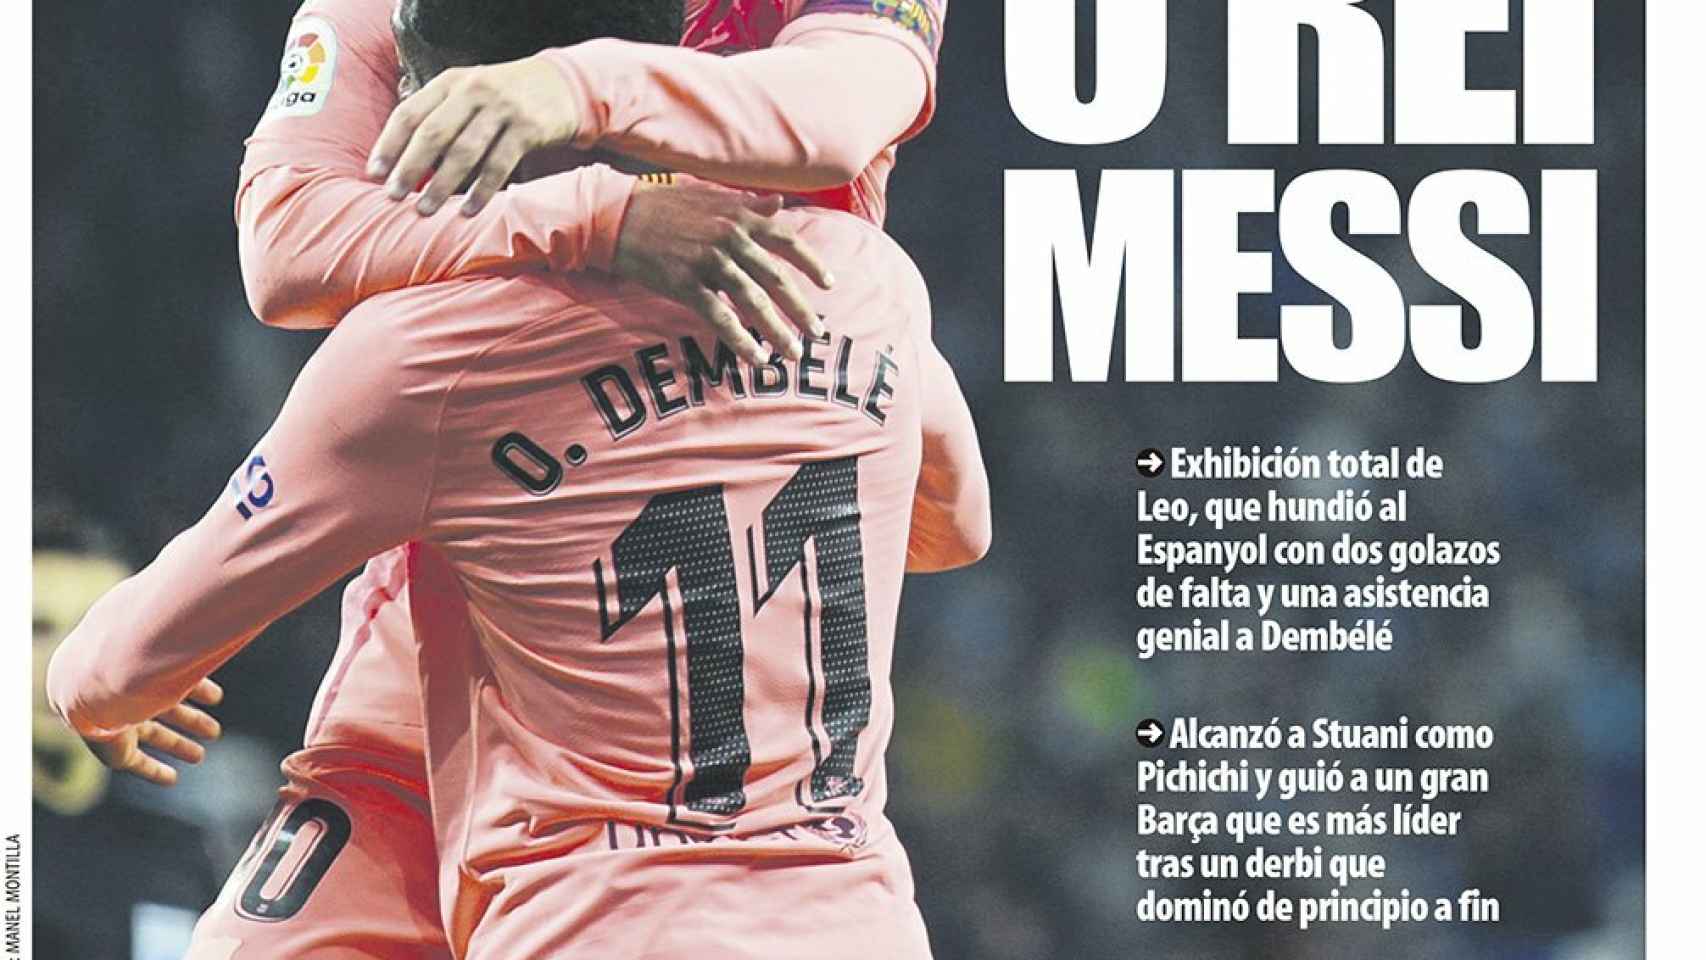 La portada del diario Mundo Deportivo (09/12/2018)